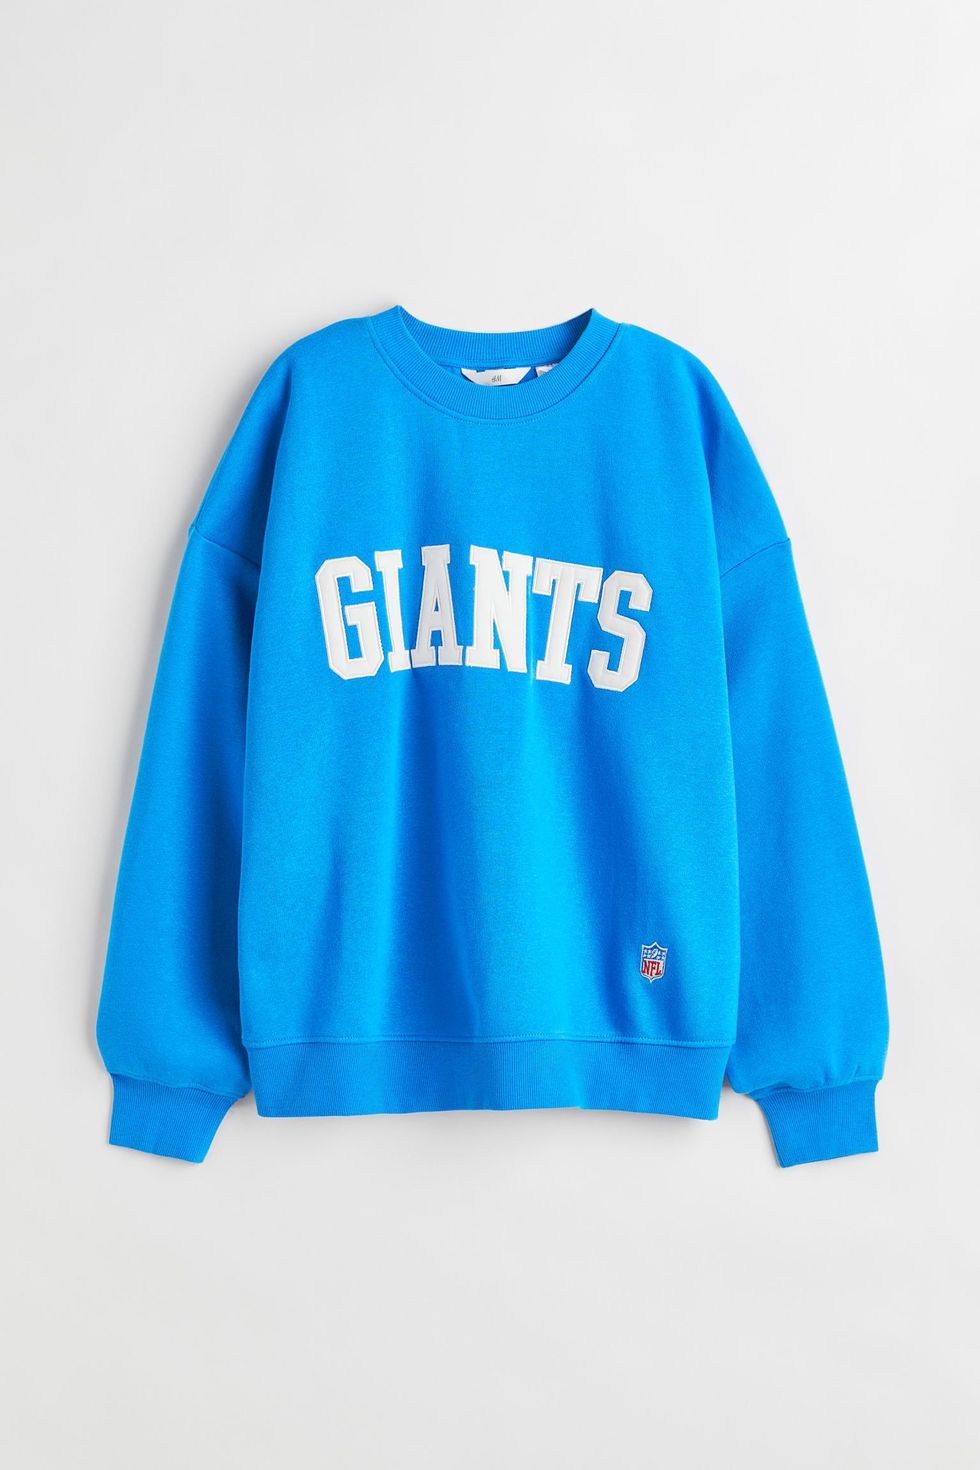 La sudadera 'Giants' azul de H&M de Mónica en